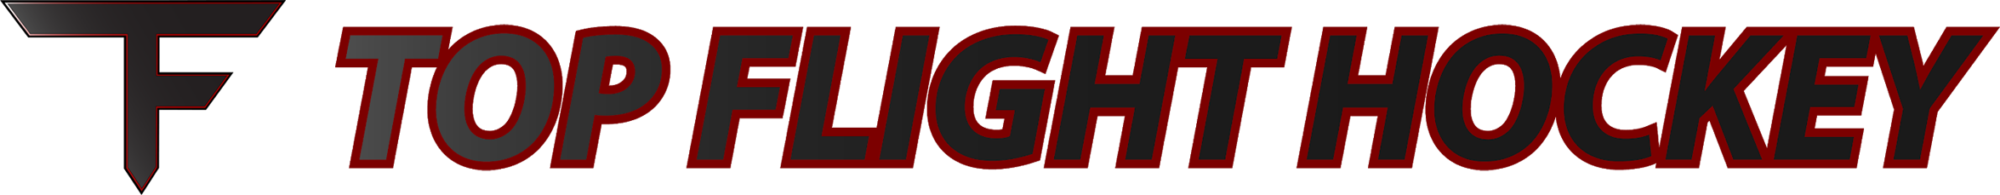 top flight hockey logo horizontal